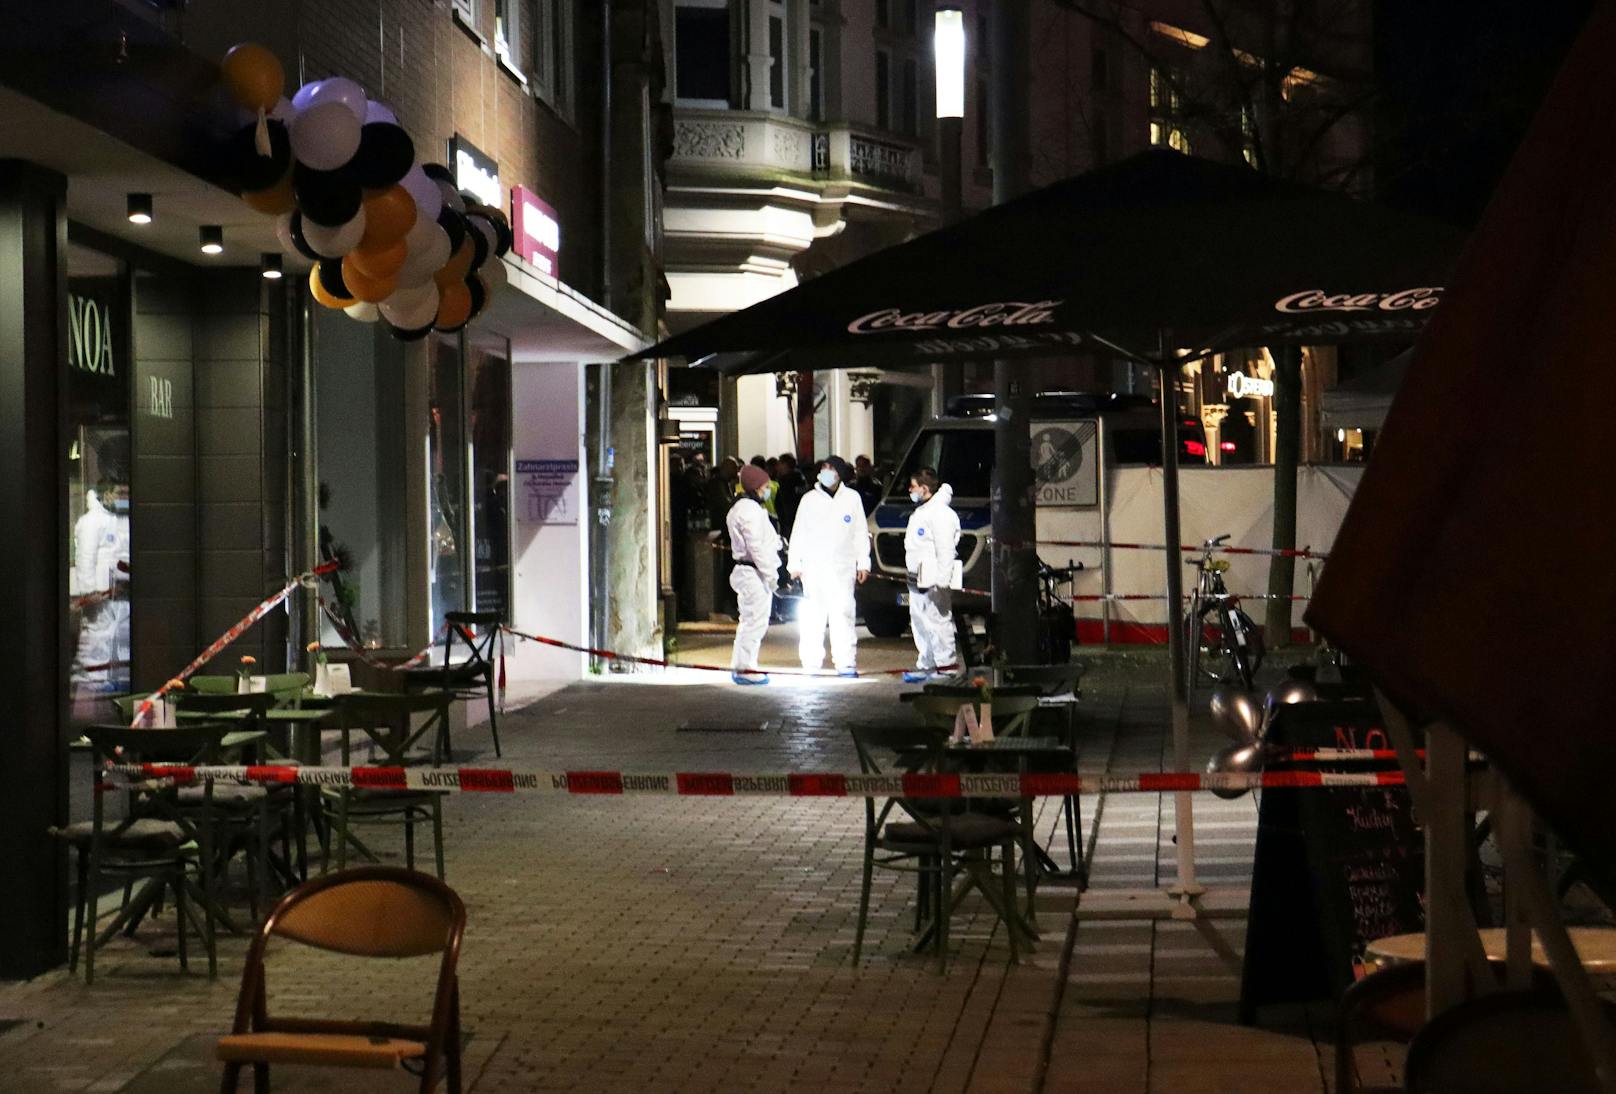 Bielefeld, 9. März: Auf offener Straße wurde ein Mann mit mehreren Schüssen erschossen. Später...